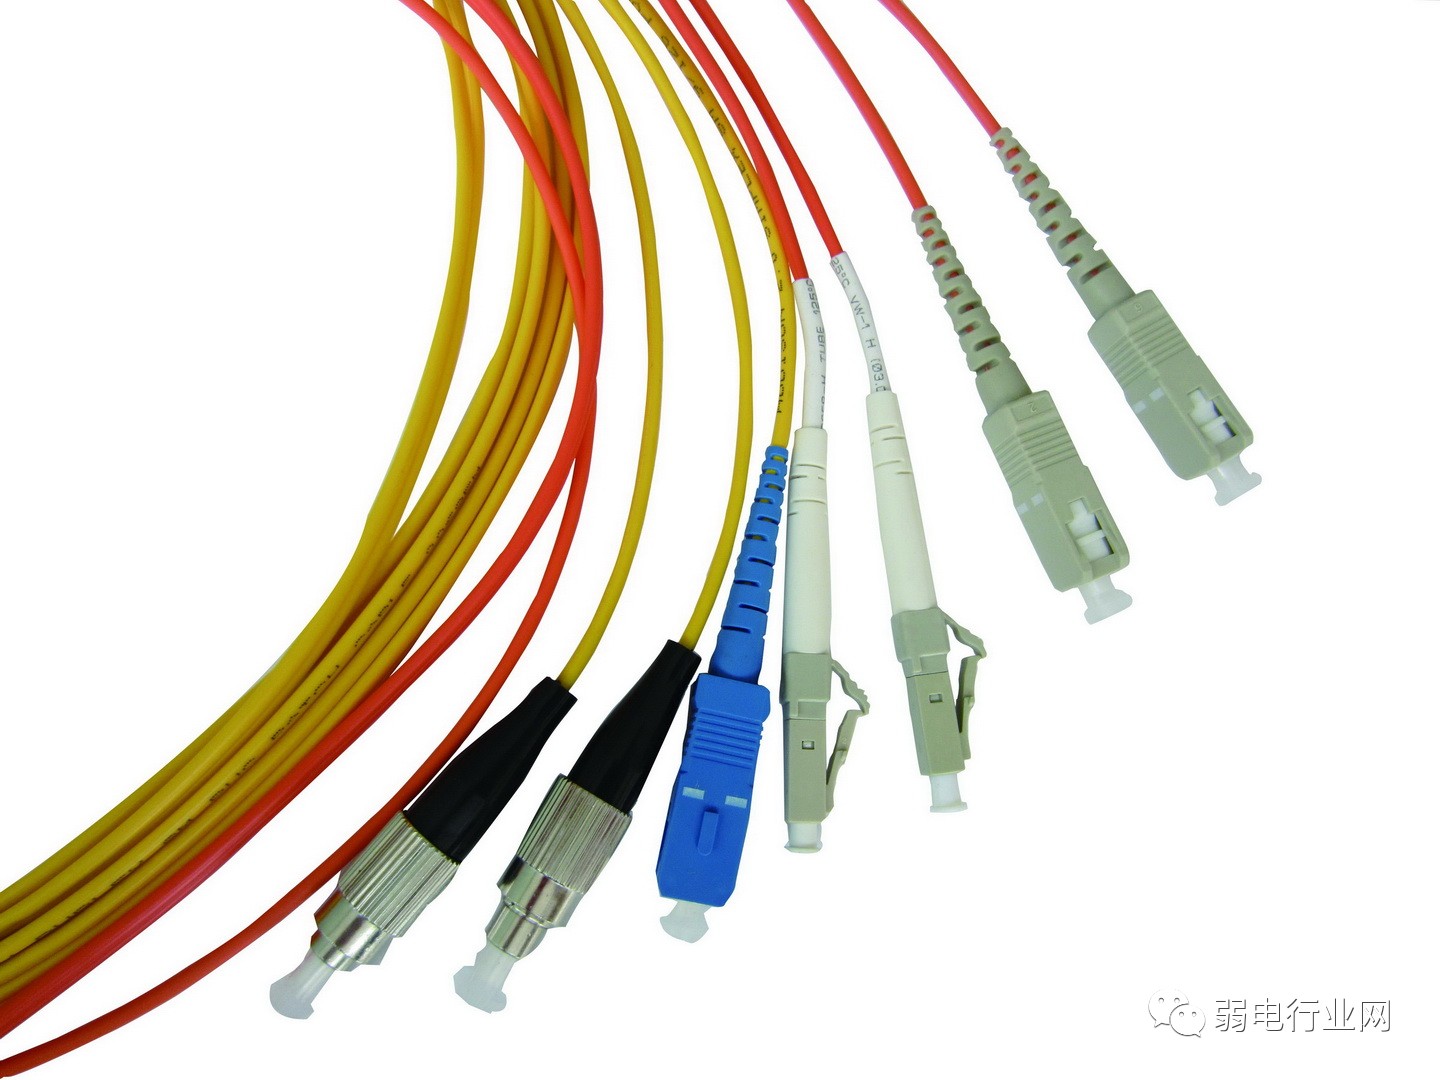 光纤光缆,网线和电缆有什么区别